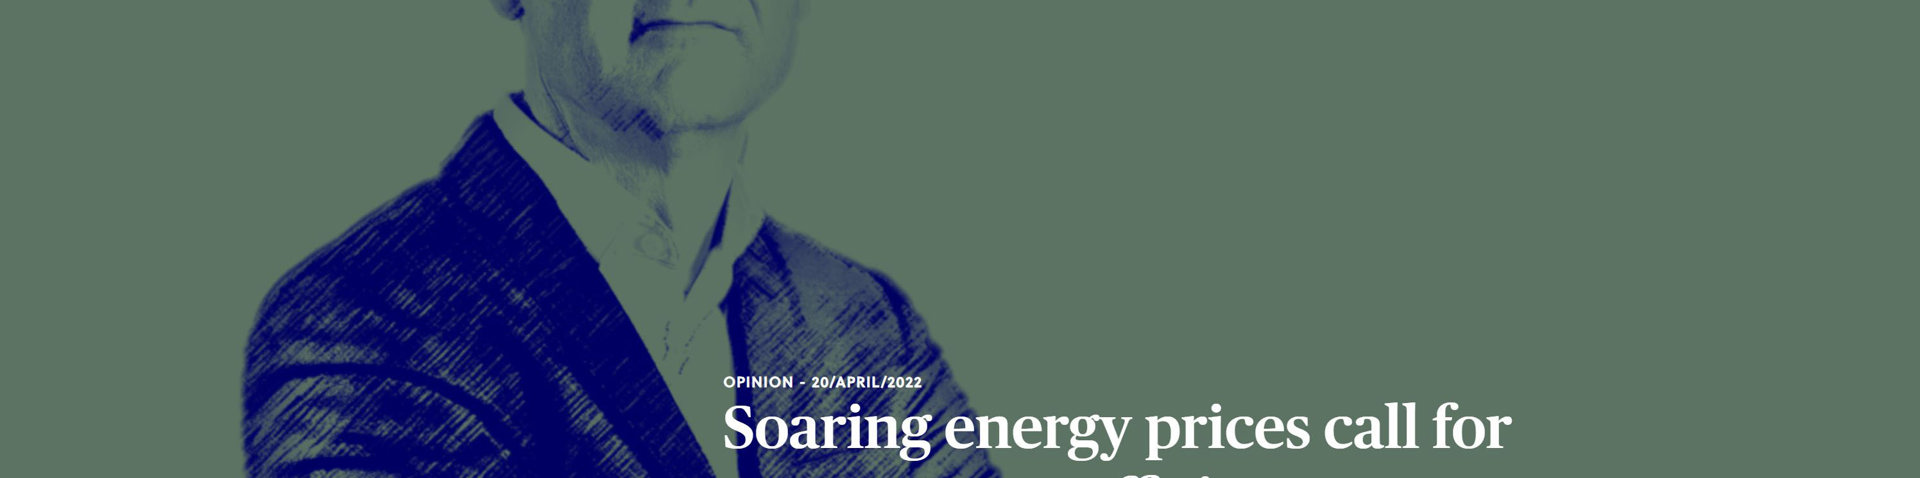 Steigende Energiepreise erfordern mehr Energieeffizienz